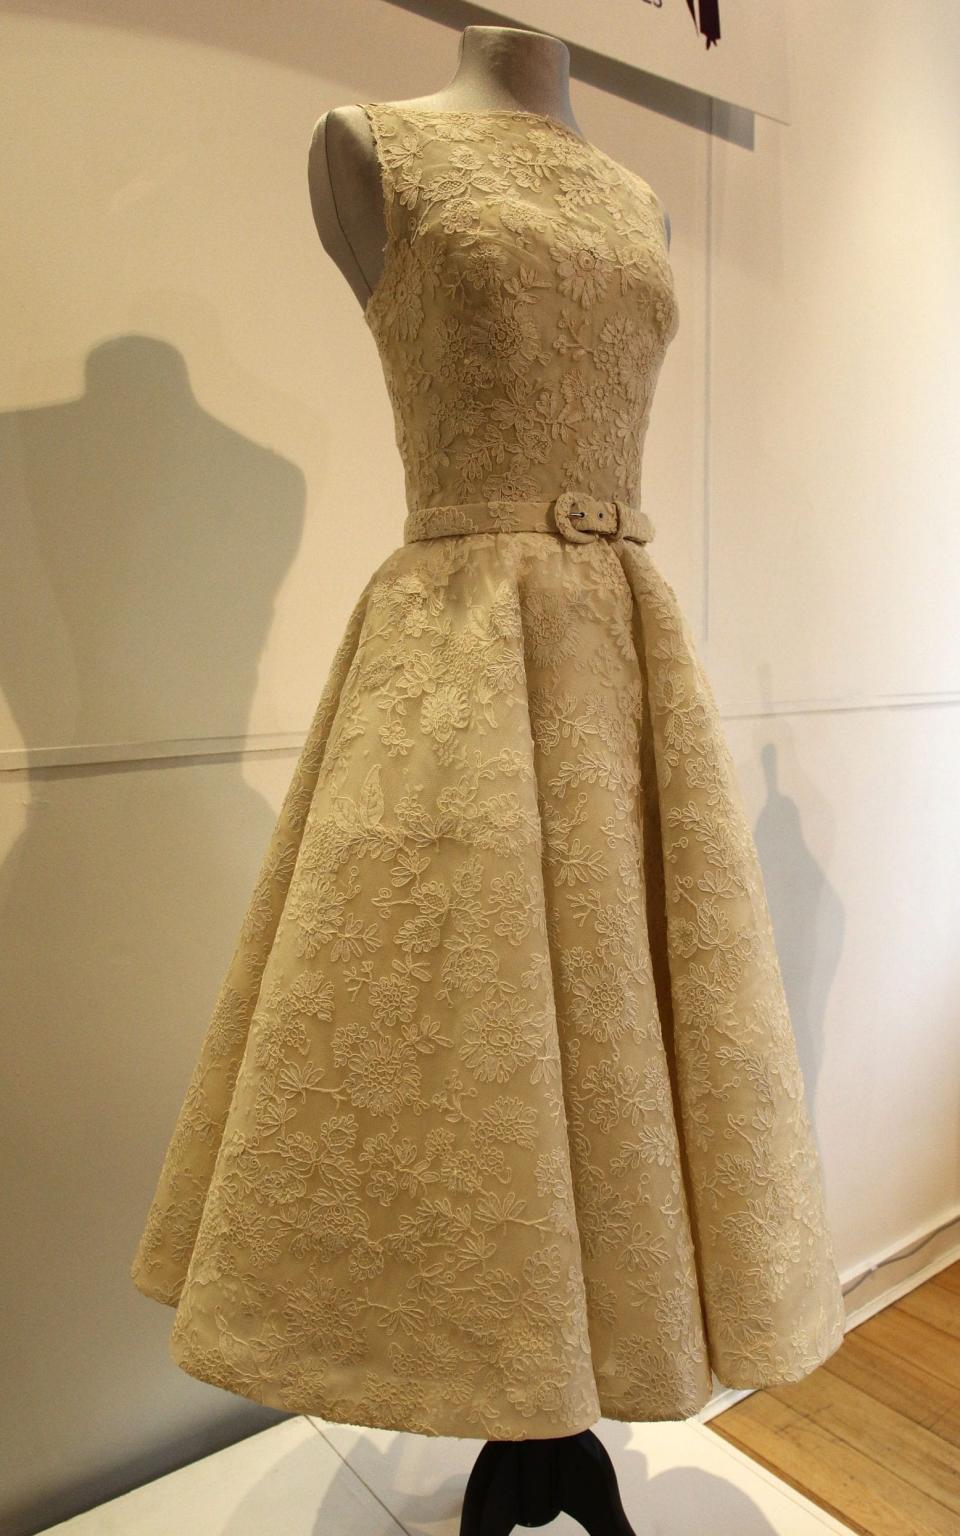 Audrey Hepburn's dress on display in London - WireImage